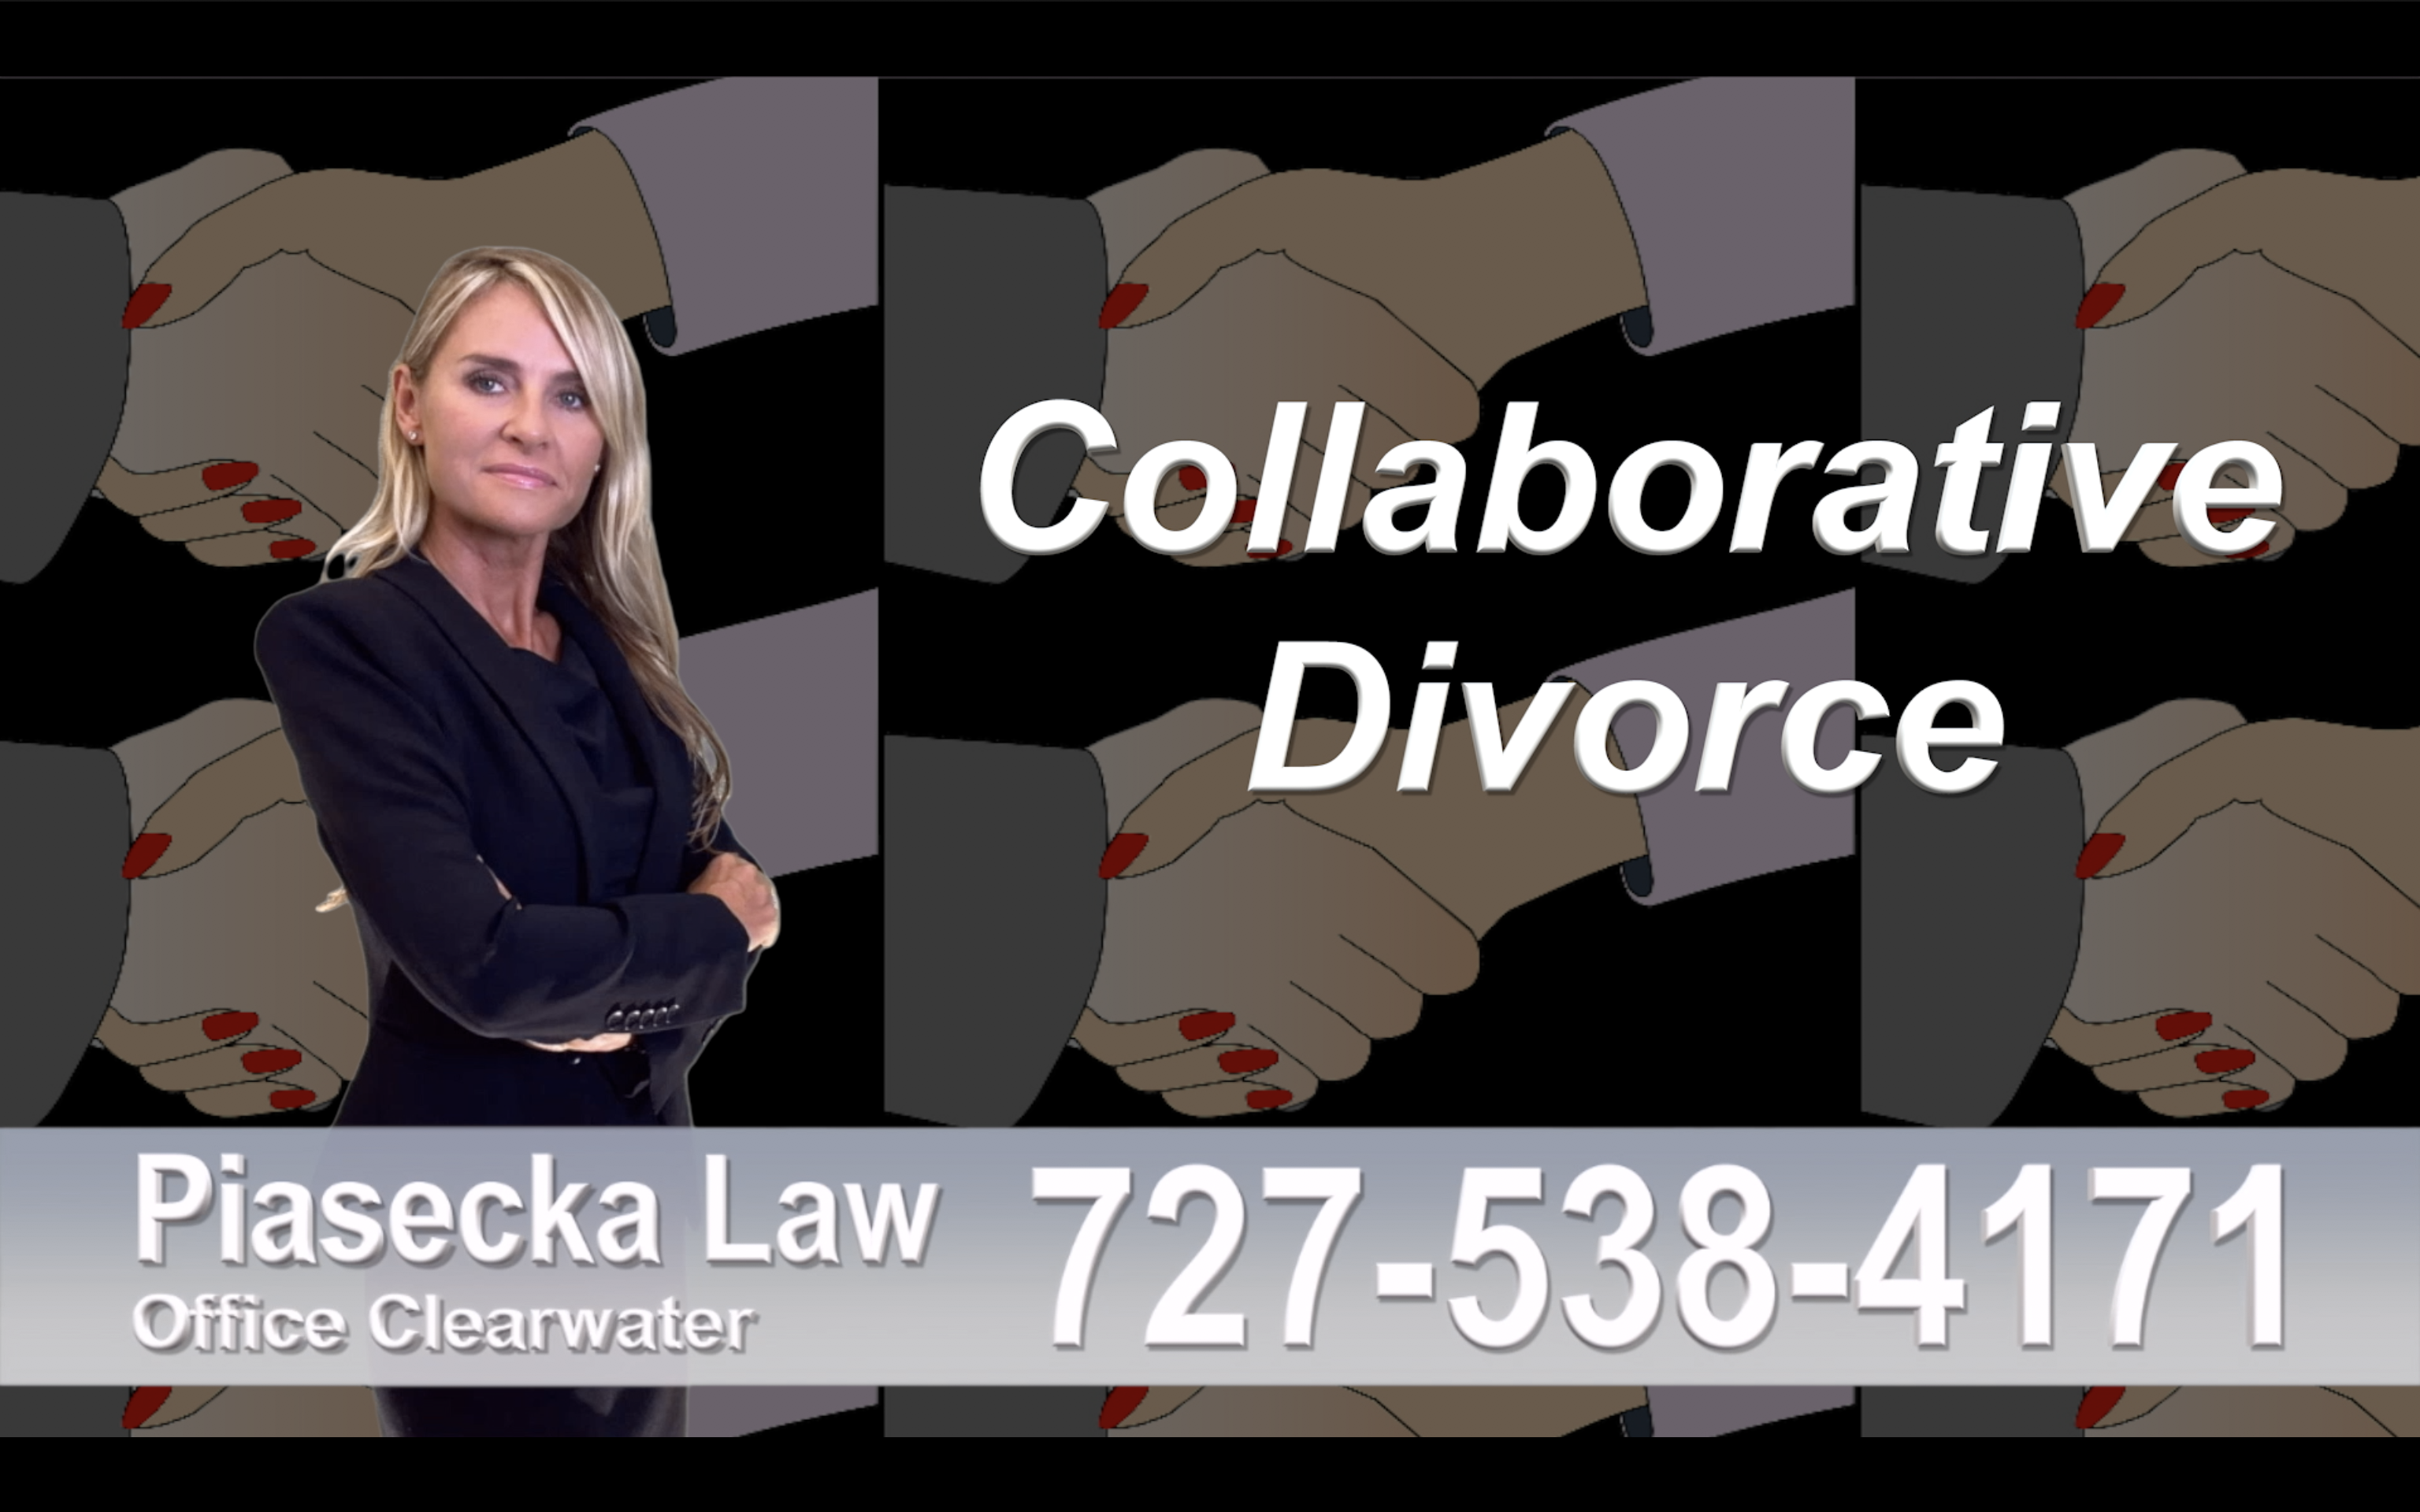 Florida Collaborative, Divorce, Attorney, Agnieszka, Piasecka, Prawnik, Rozwodowy, Rozwód, Adwokat, Najlepszy, Best, divorce, attorney, uncontested, divorce